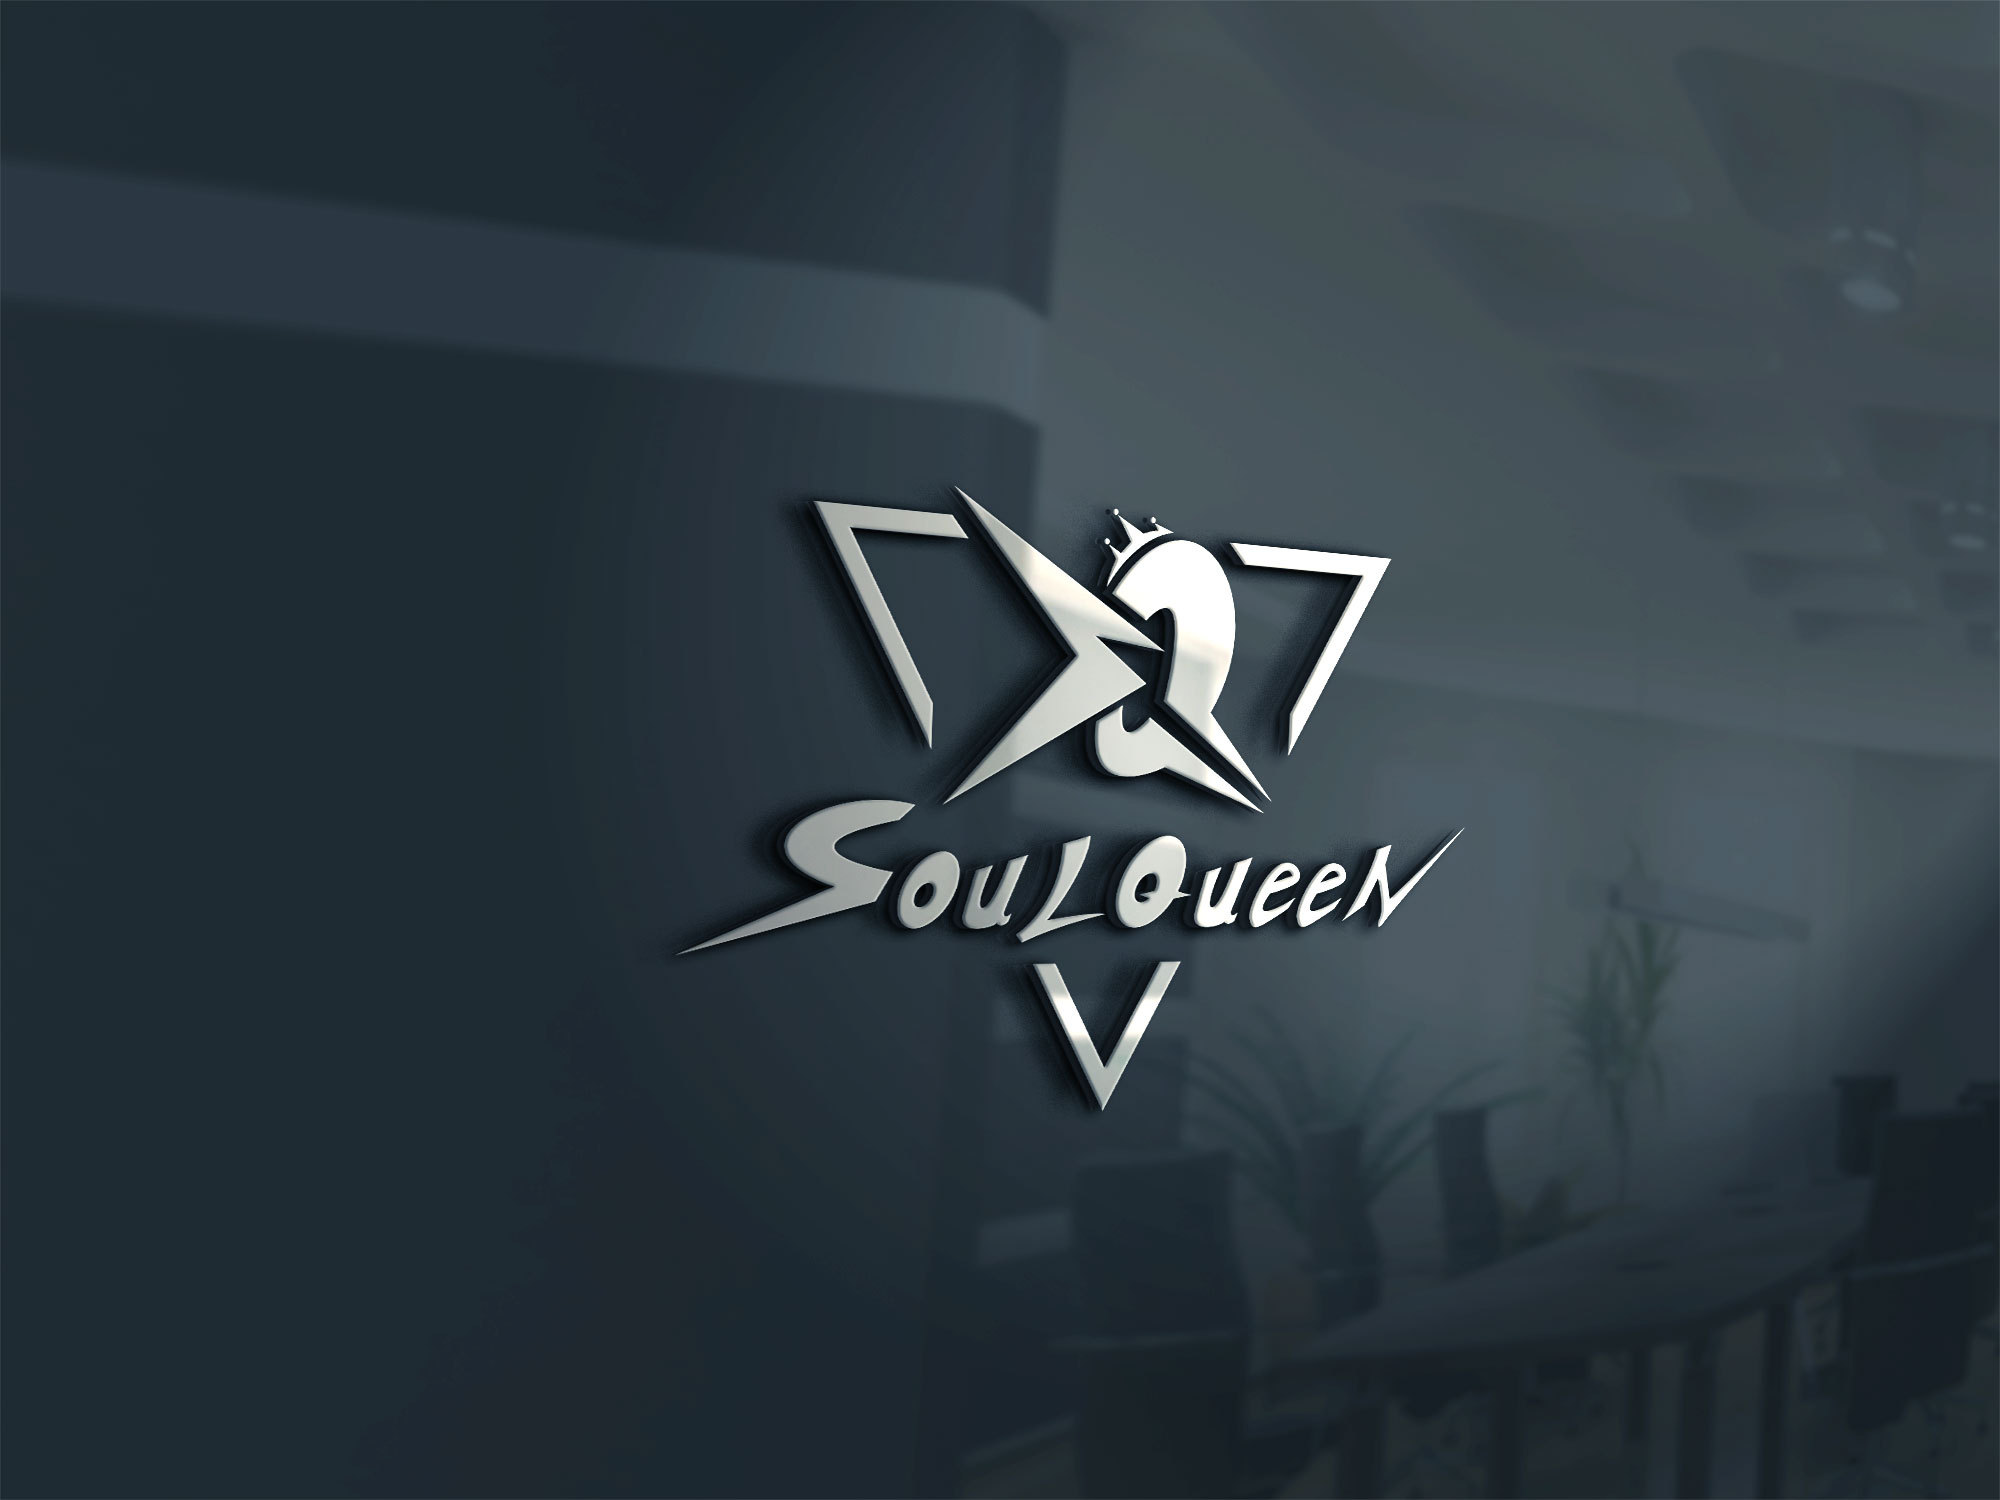 soulqueen-logo设计街舞爵士舞钢管舞 hip hop waacking标志设计